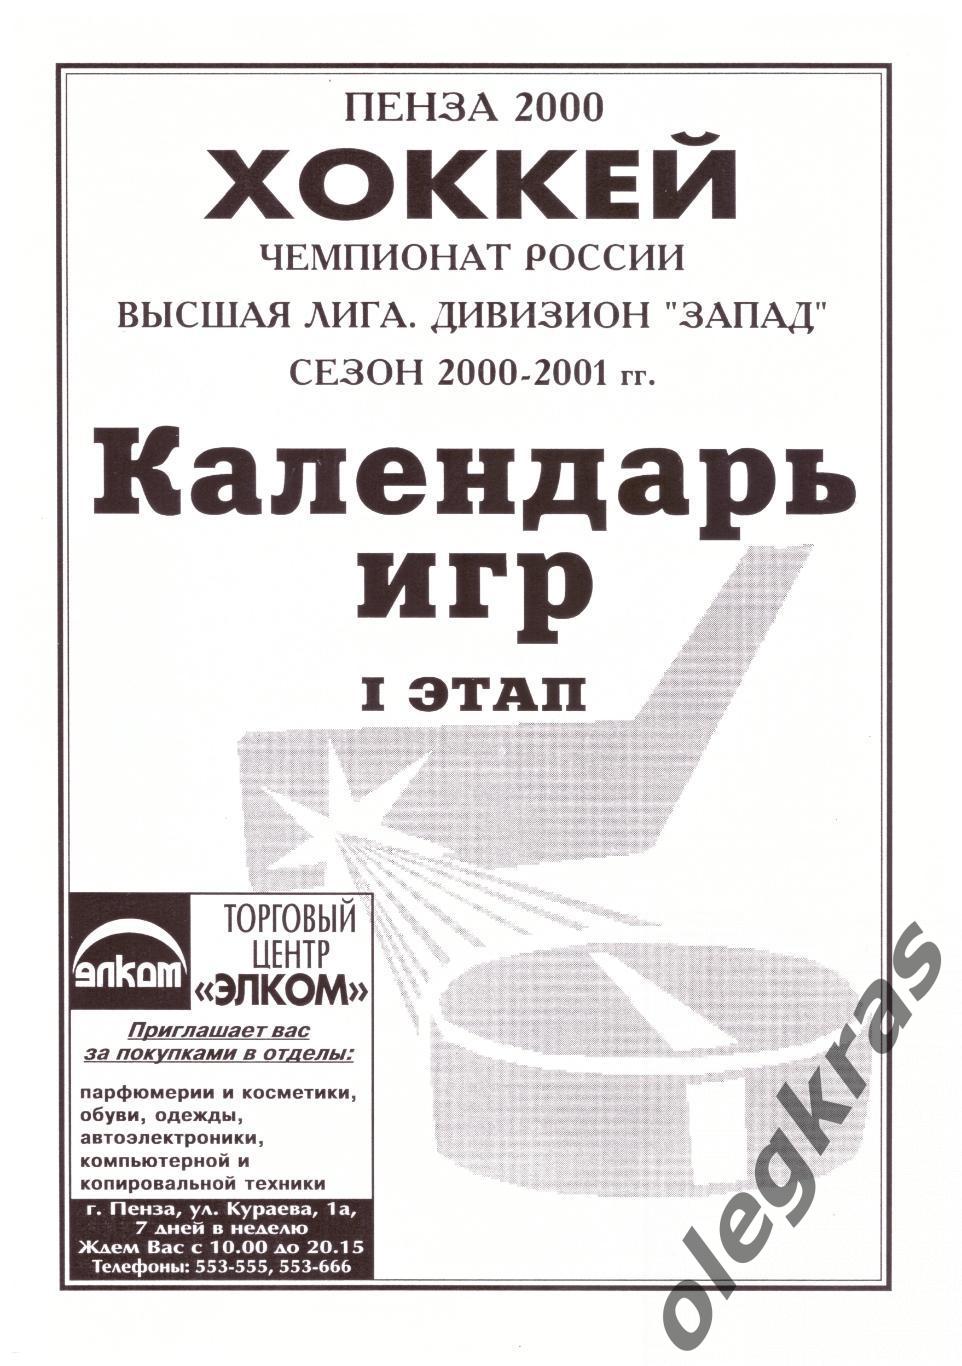 Пенза - 2000/2001. Программа сезона(Календарь игр, состав команды Дизелист).